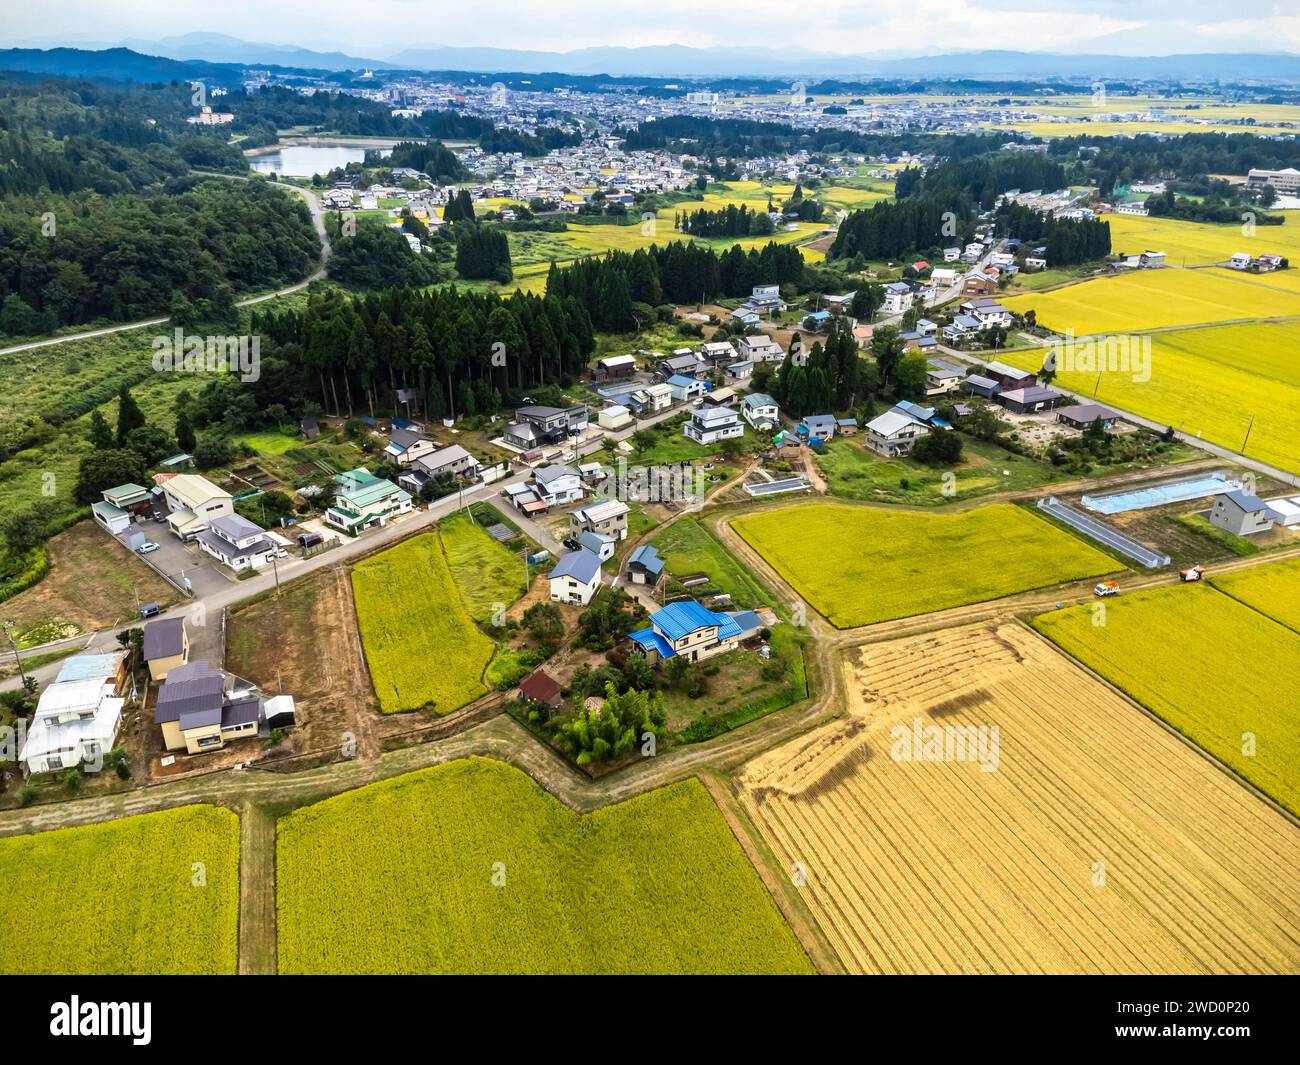 Champ de riz, couleur jaune de la récolte d'automne, pied de montagnes, drone aérien, ville de Yokote, Akita, Tohoku, Japon, Asie de l'est, Asie Banque D'Images